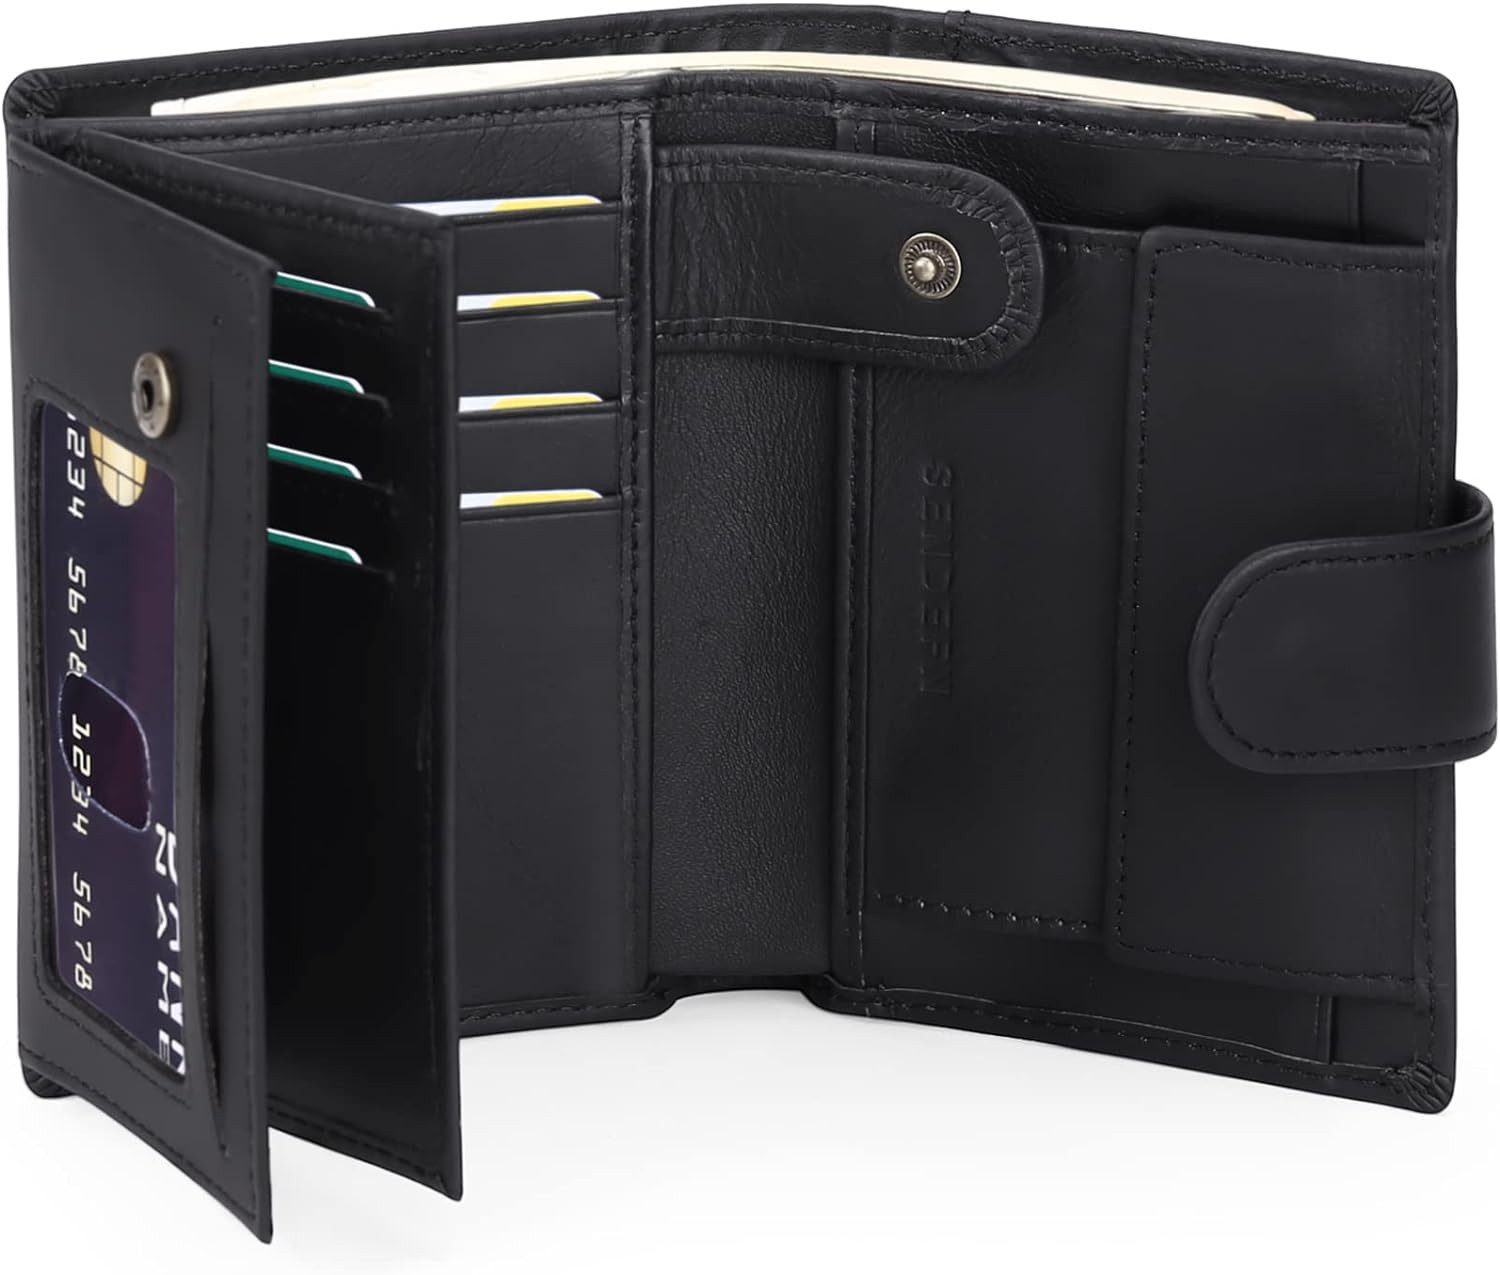 SENDEFN Geldbörse (Herren Groß Vintage Leder Geldbörse, Herren Portemonnaie mit RFID Schutz), Brieftasche Wallet Portmonee mit 16 Kartenfächer & Münzfach